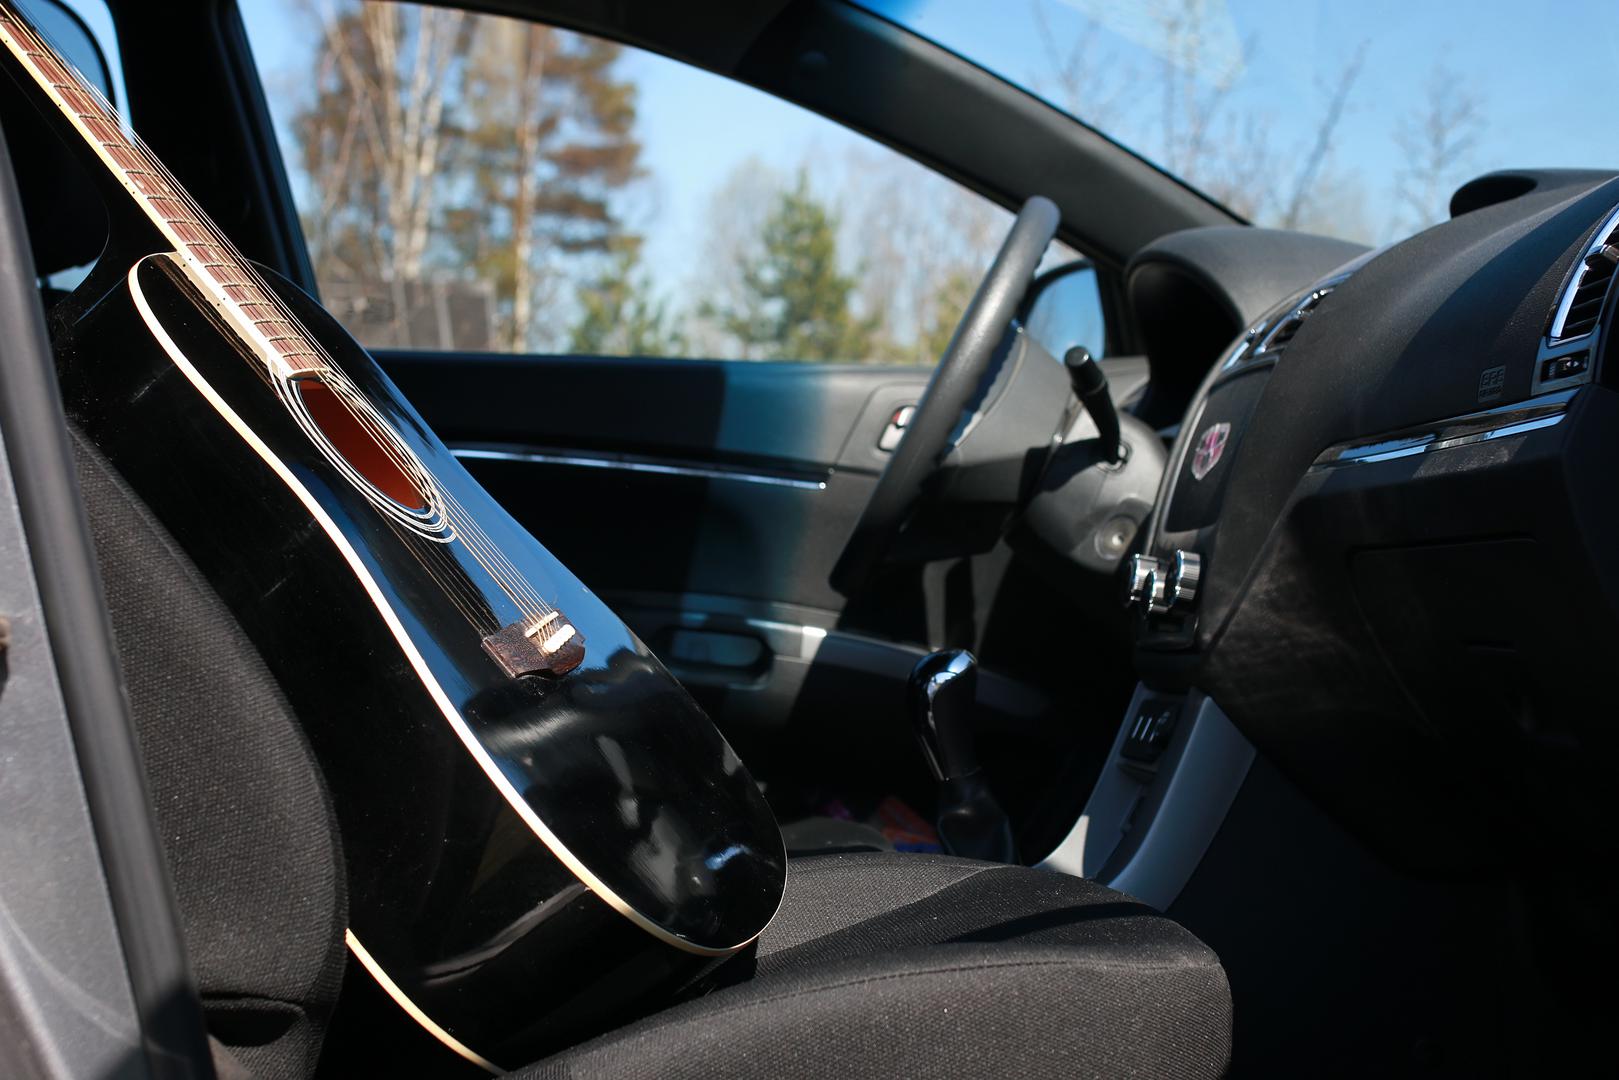 Drveni predmeti – Ne ostavljajte drvene glazbene instrumente, komade namještaja i slične drvene stvari u svome automobilu jer se pri niskim temperaturama i suhom zraku mogu trajno oštetiti.